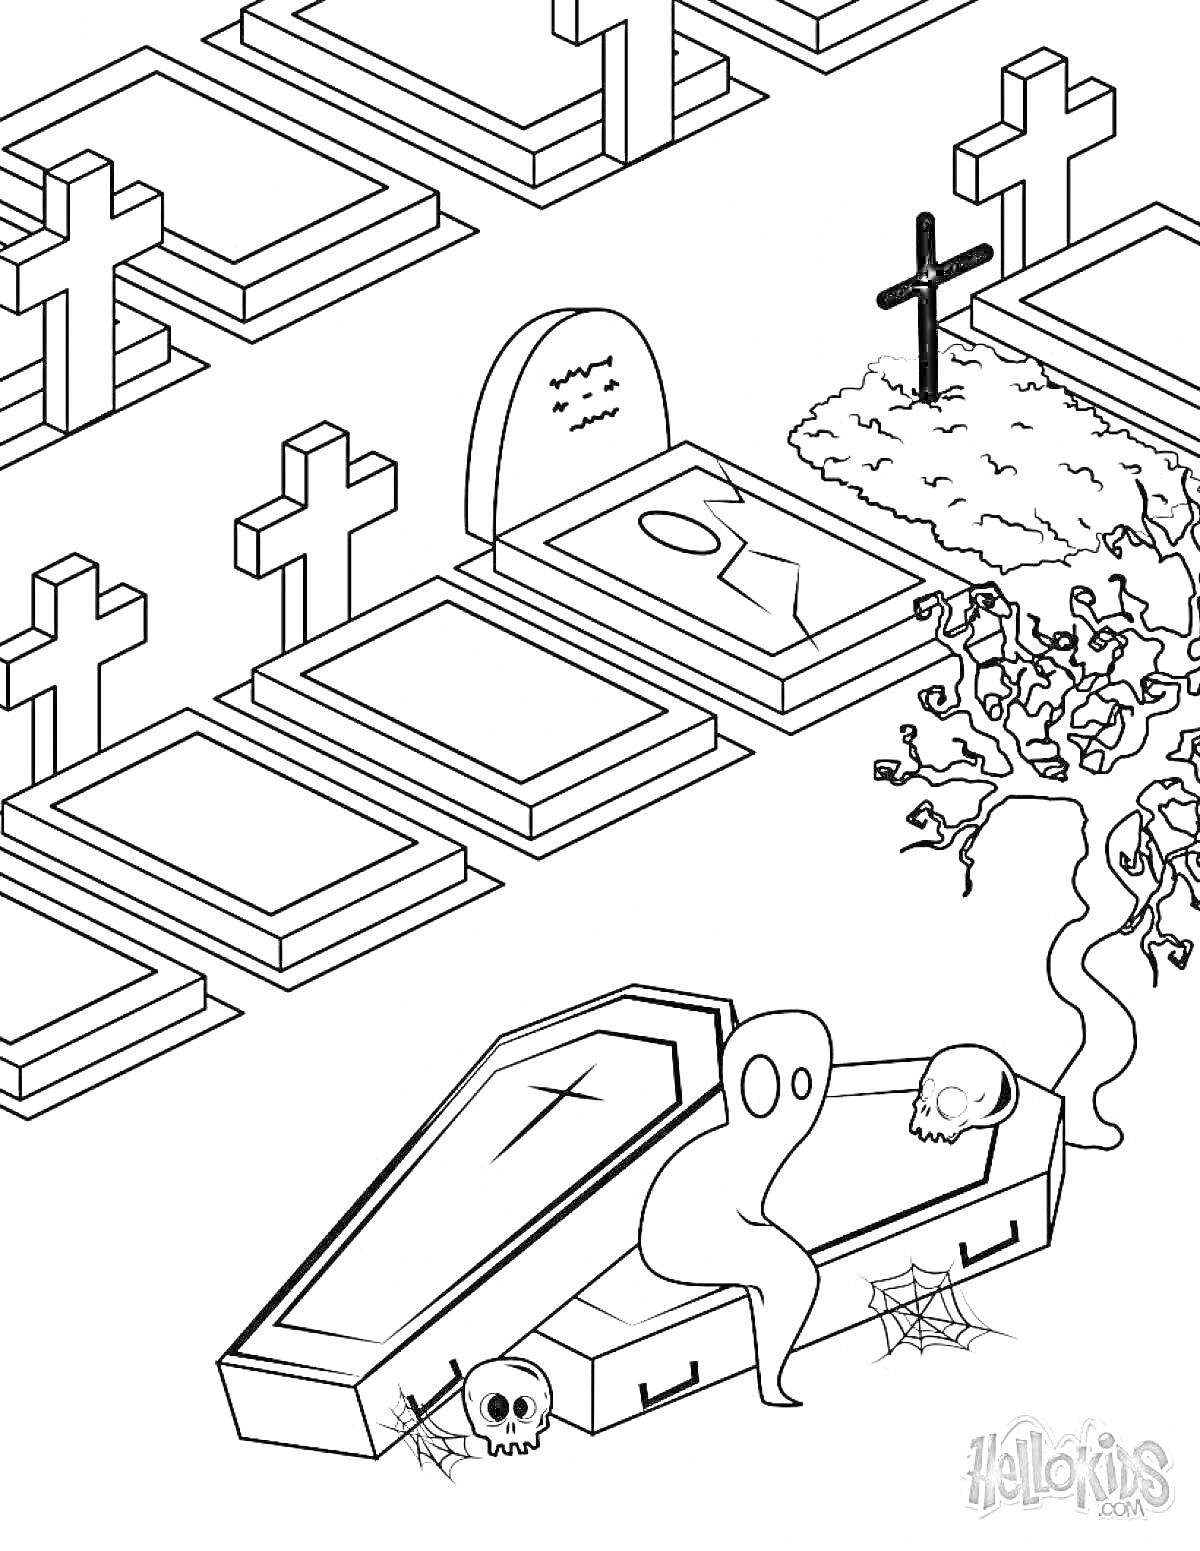 кладбище с крестами, надгробиями, открытым гробом, привидением, черепом, деревом и паутиной